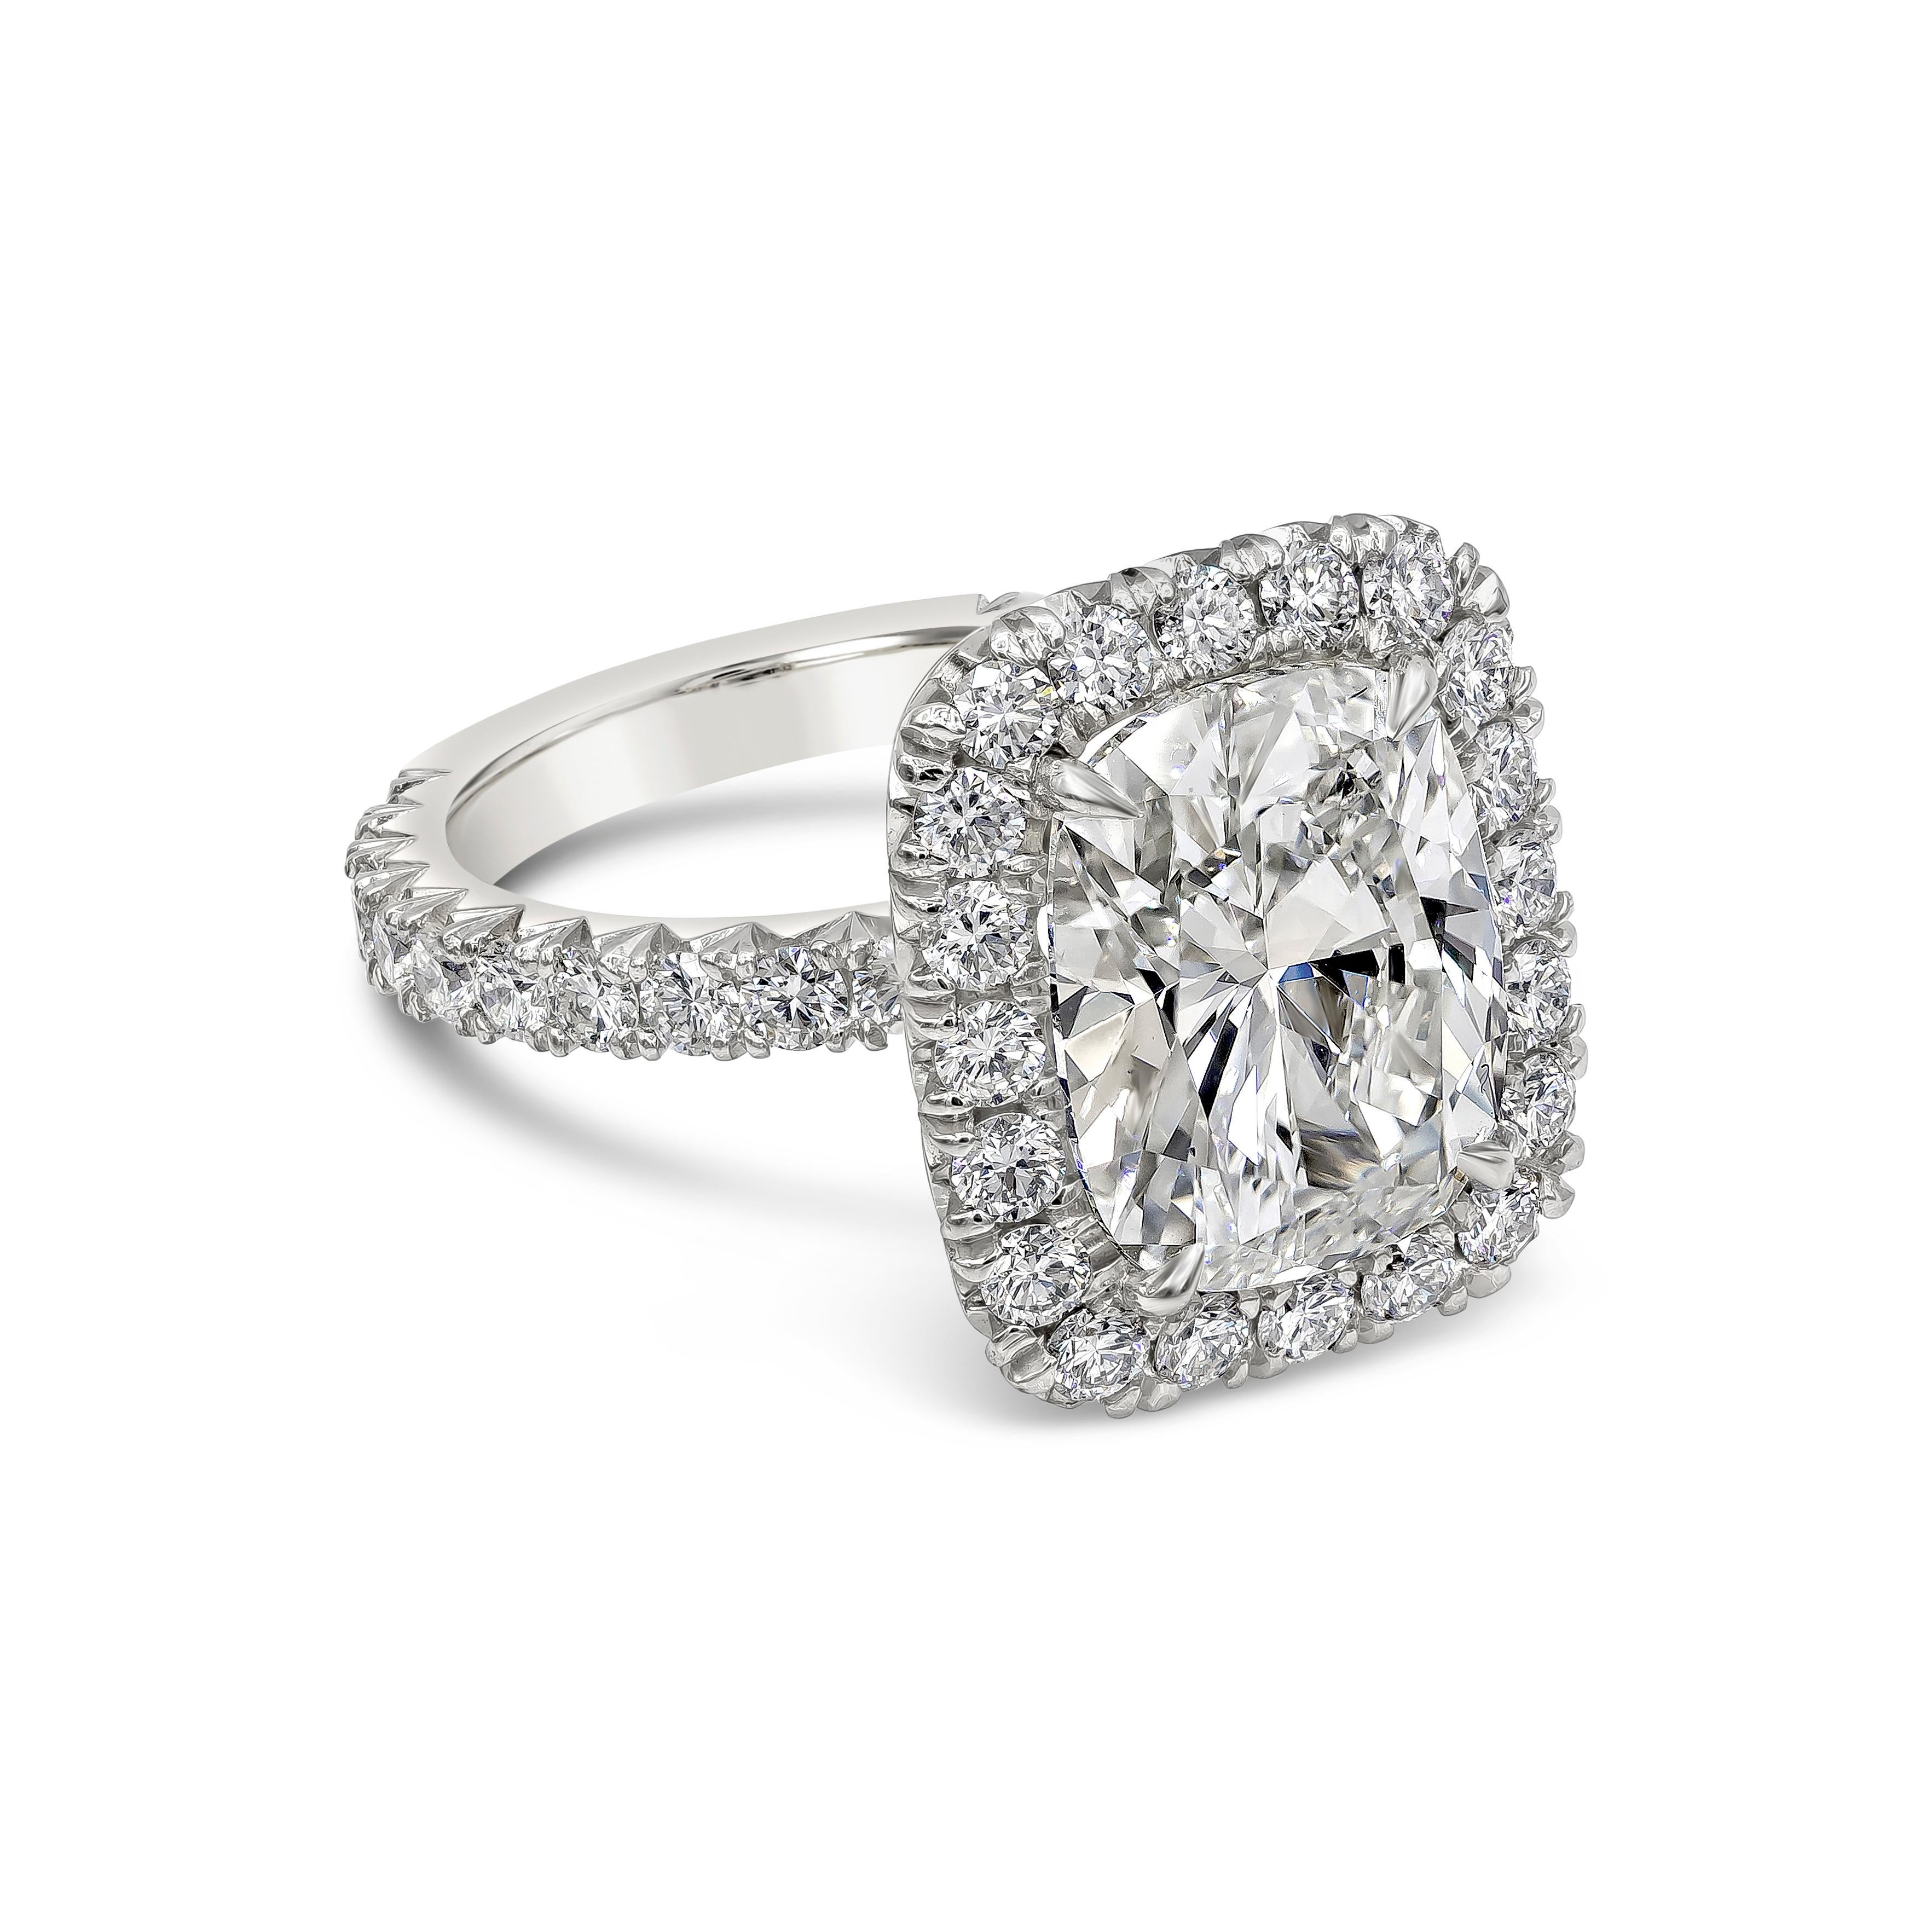 Ein klassischer Verlobungsring mit einem 5,01-Karat-Diamanten im Kissenschliff, GIA-zertifiziert als J Farbe und VS2 in Klarheit. Der Mittelstein ist von einer einzigen Reihe halbrunder Brillanten umgeben und der Schaft ist mit Diamanten besetzt.